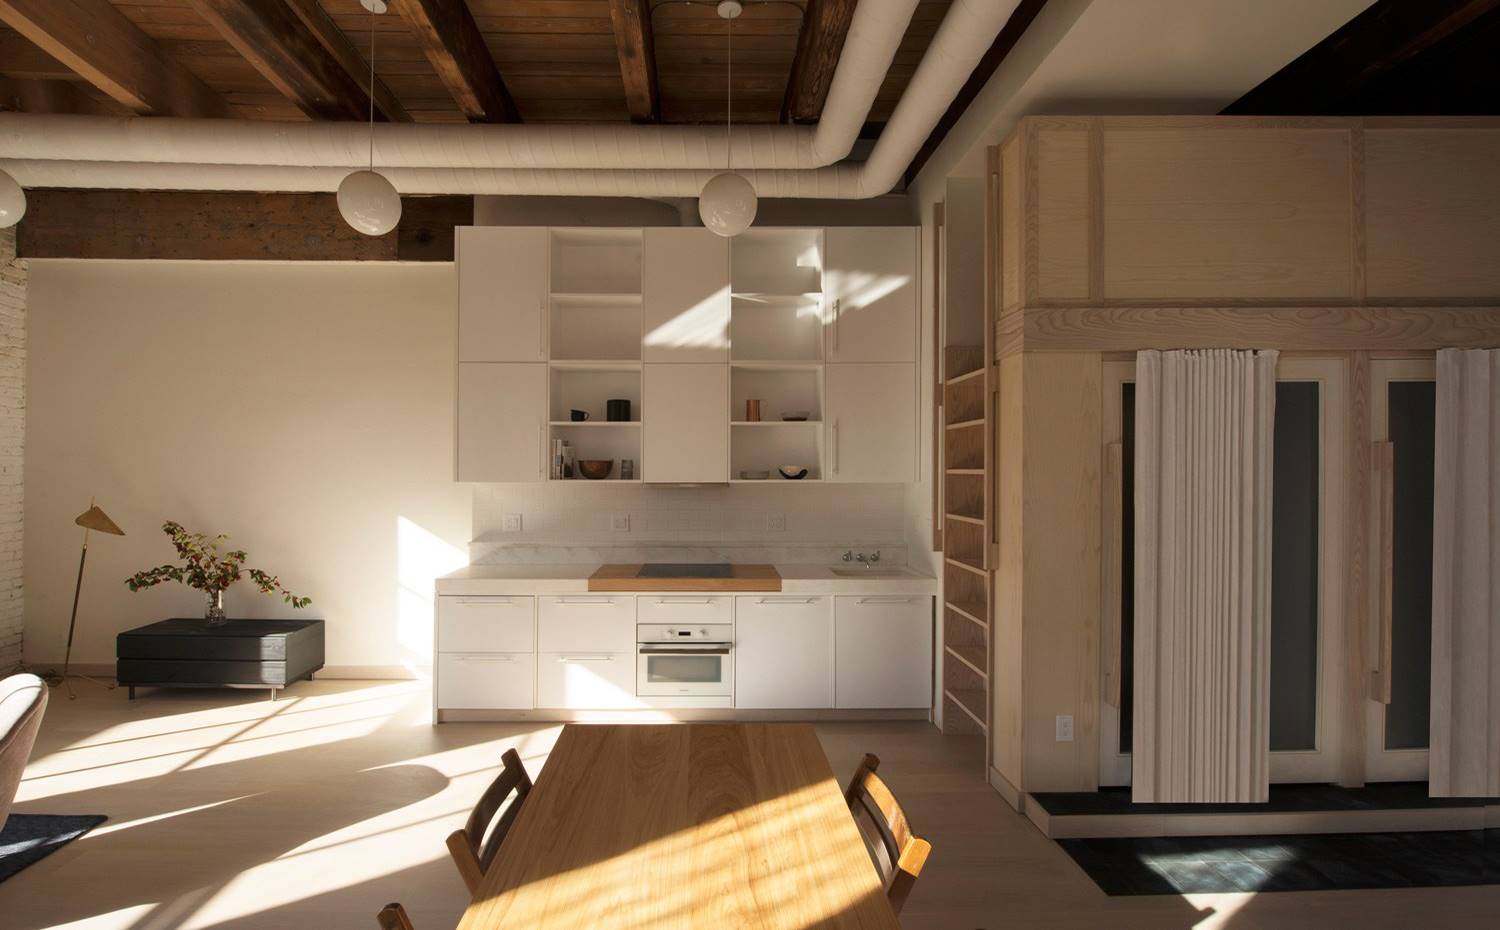 Cocina en línea, mesa comedor madera, estructura de madera con comparitmentos, lámpara de suspensión tipo globo. Dada la gran altura de la vivienda, el dormitorio se encuentra en un entrepiso superior, al que se accede a través de una escalera integrada. 